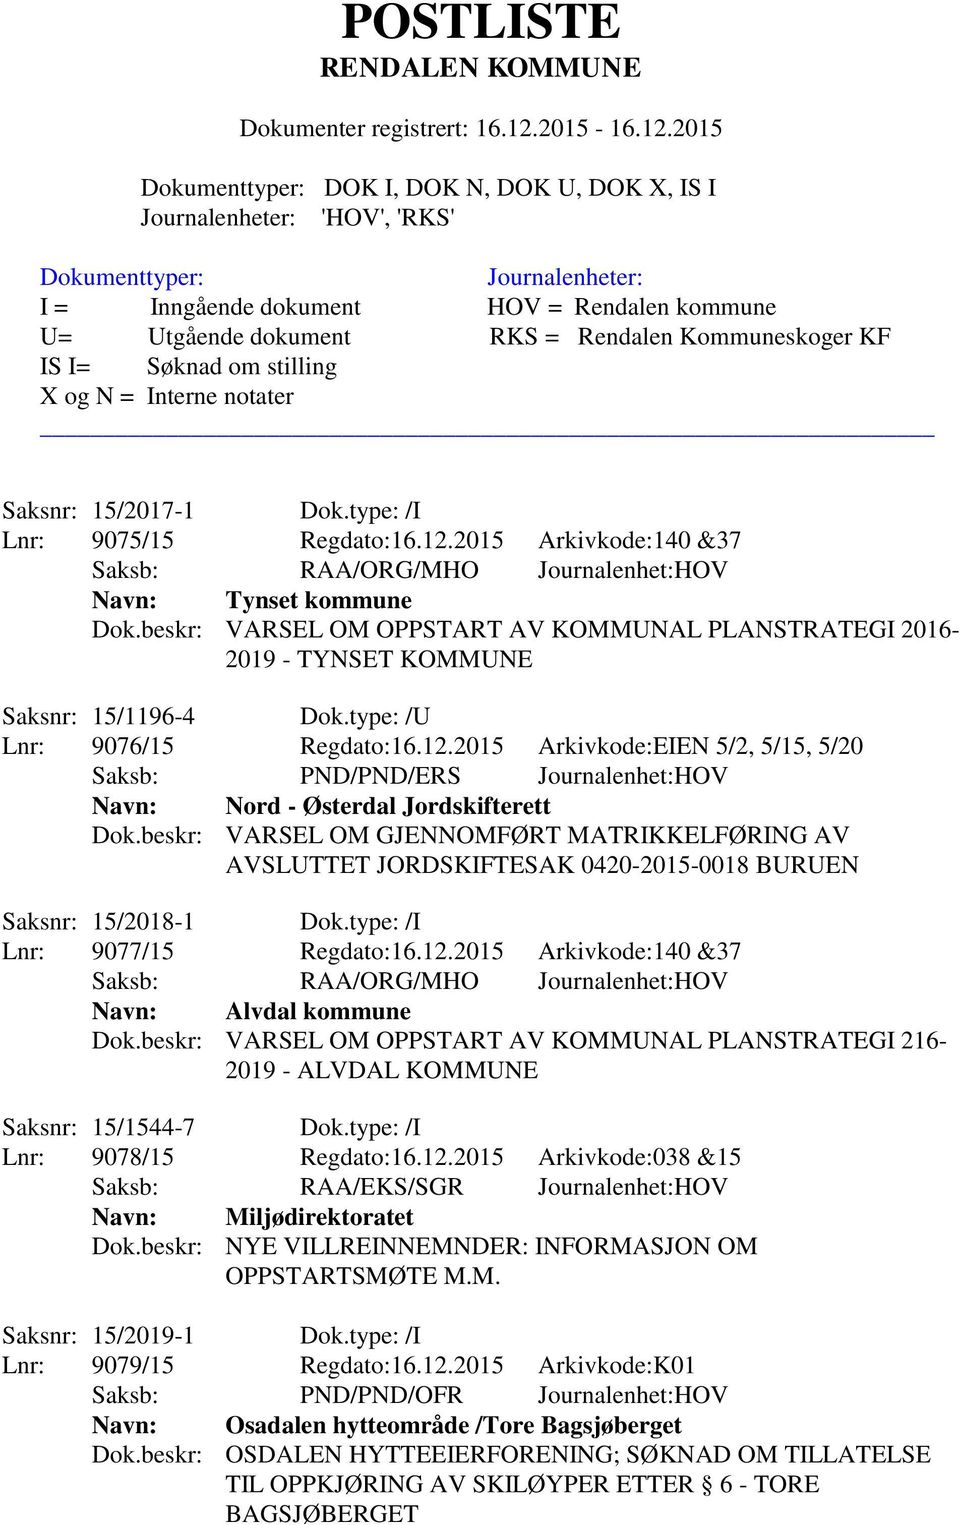 2015 Arkivkode:EIEN 5/2, 5/15, 5/20 Saksb: PND/PND/ERS Journalenhet:HOV Navn: Nord - Østerdal Jordskifterett Dok.